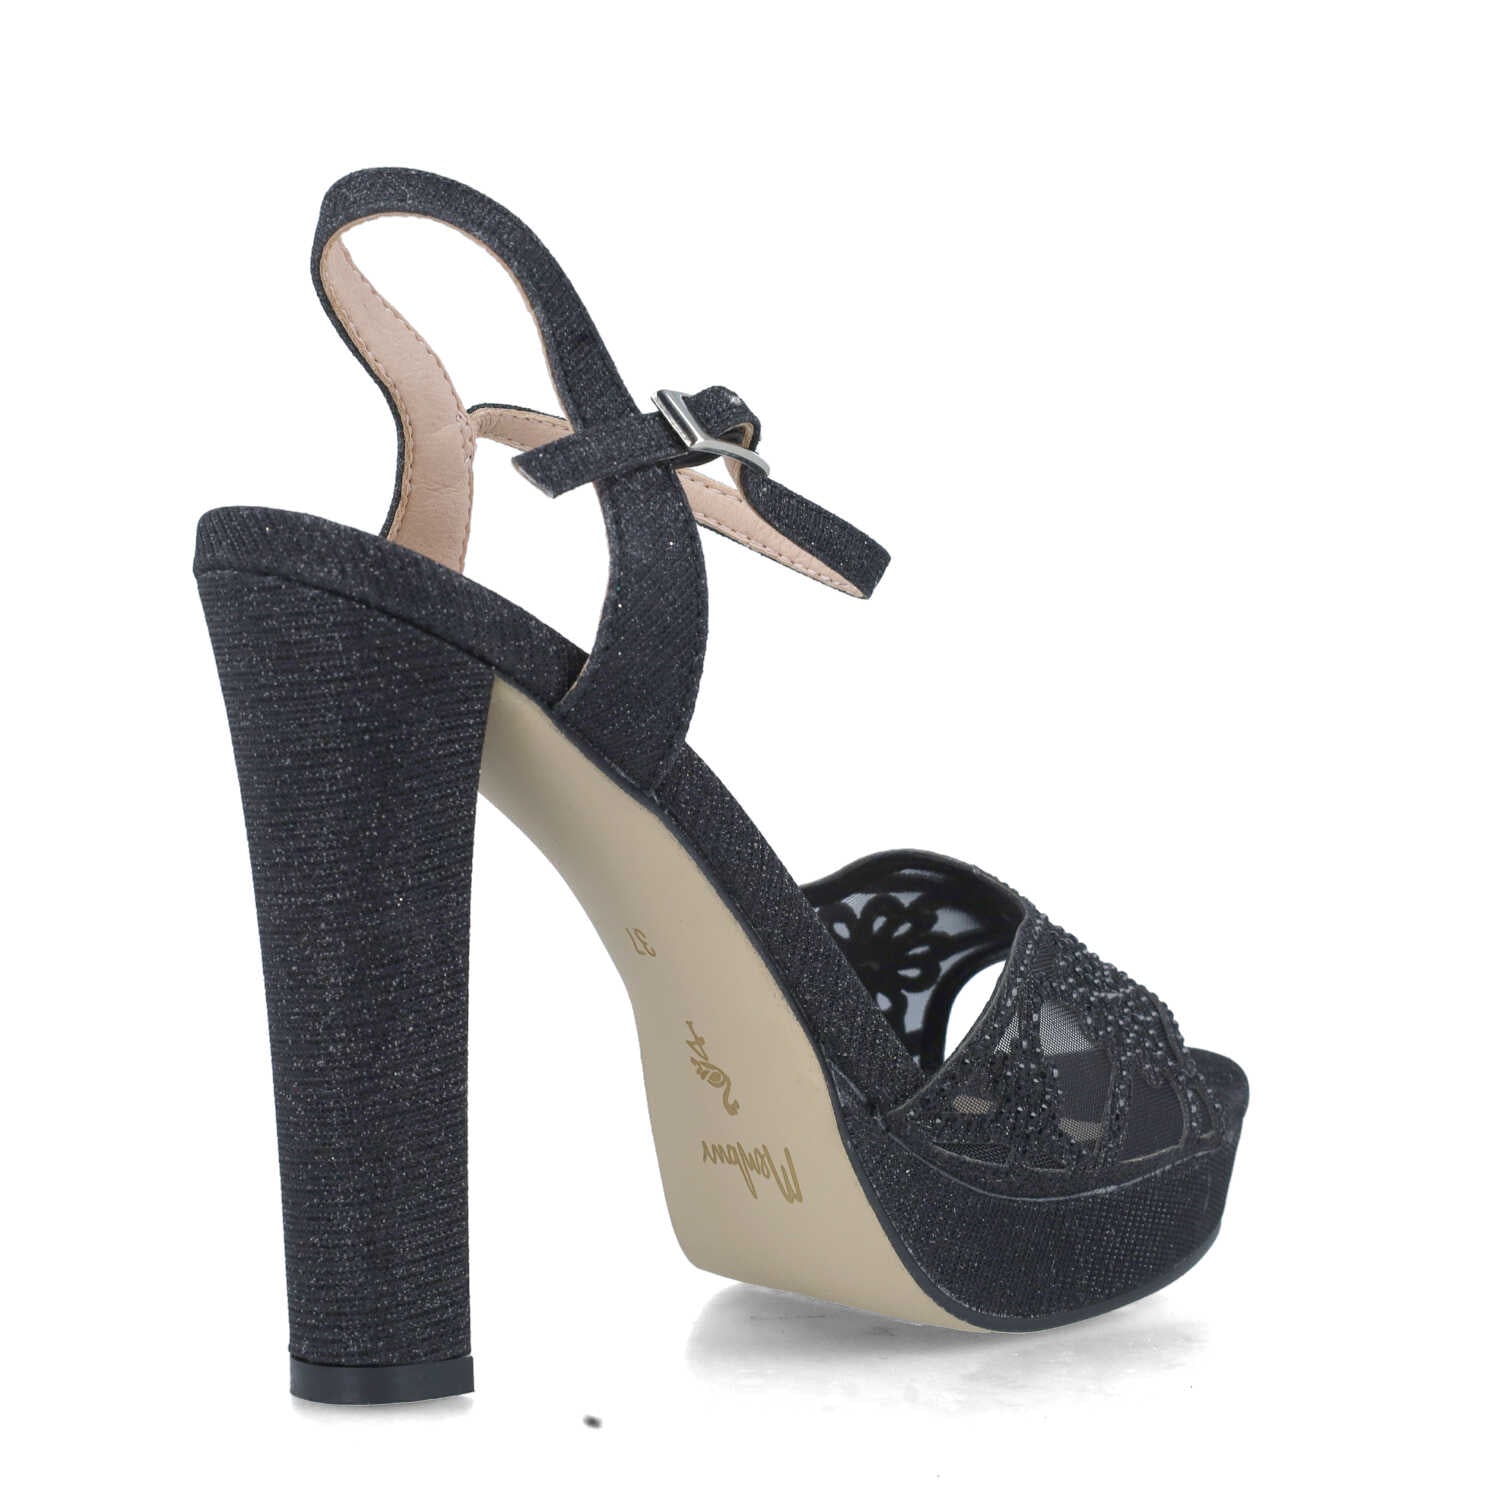 Black Platform Heeled Sandals With Ankle-Strap